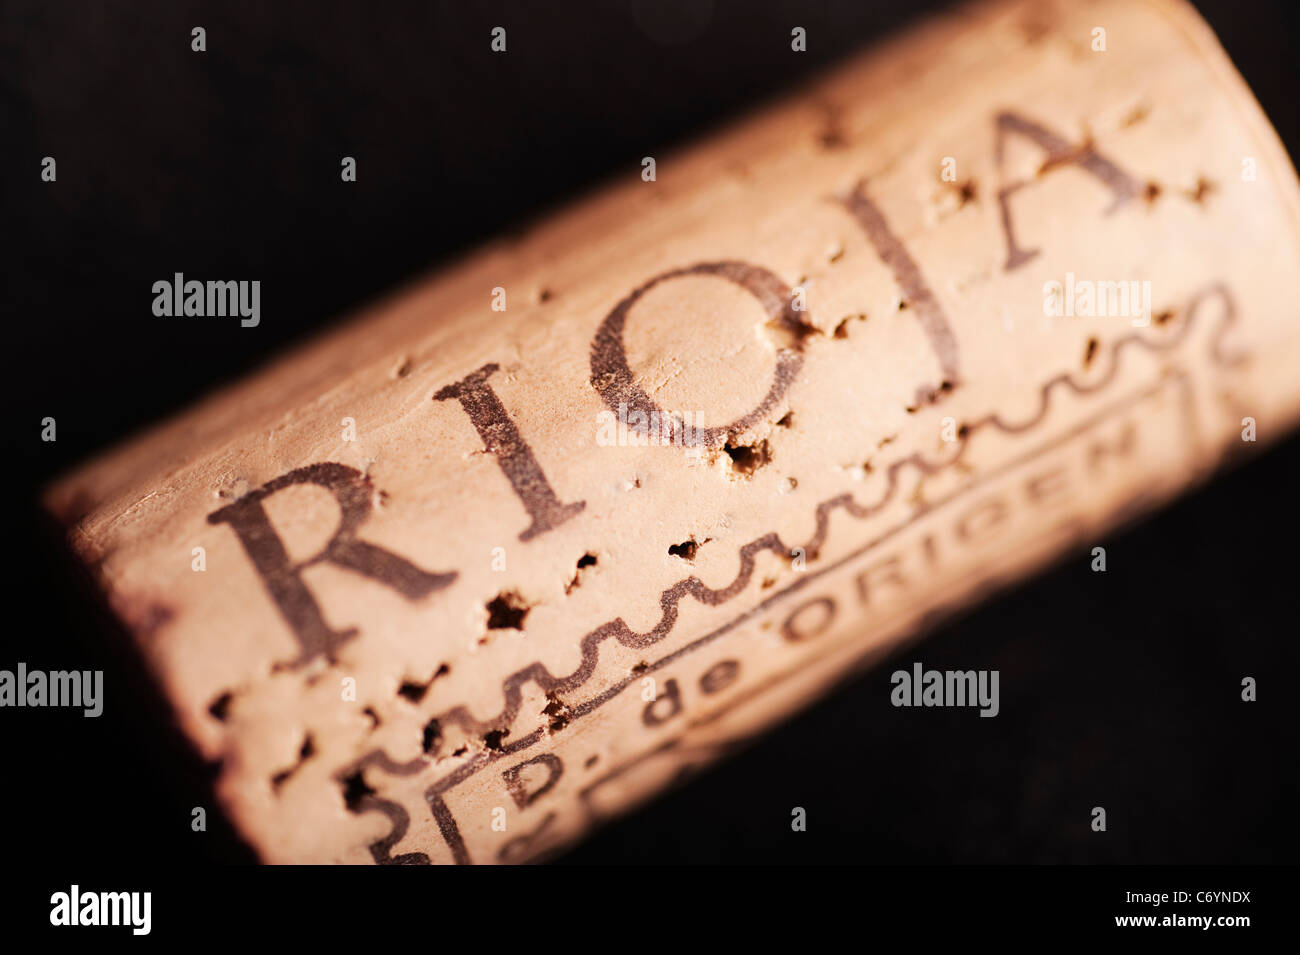 Rioja wine cork closeup Stock Photo